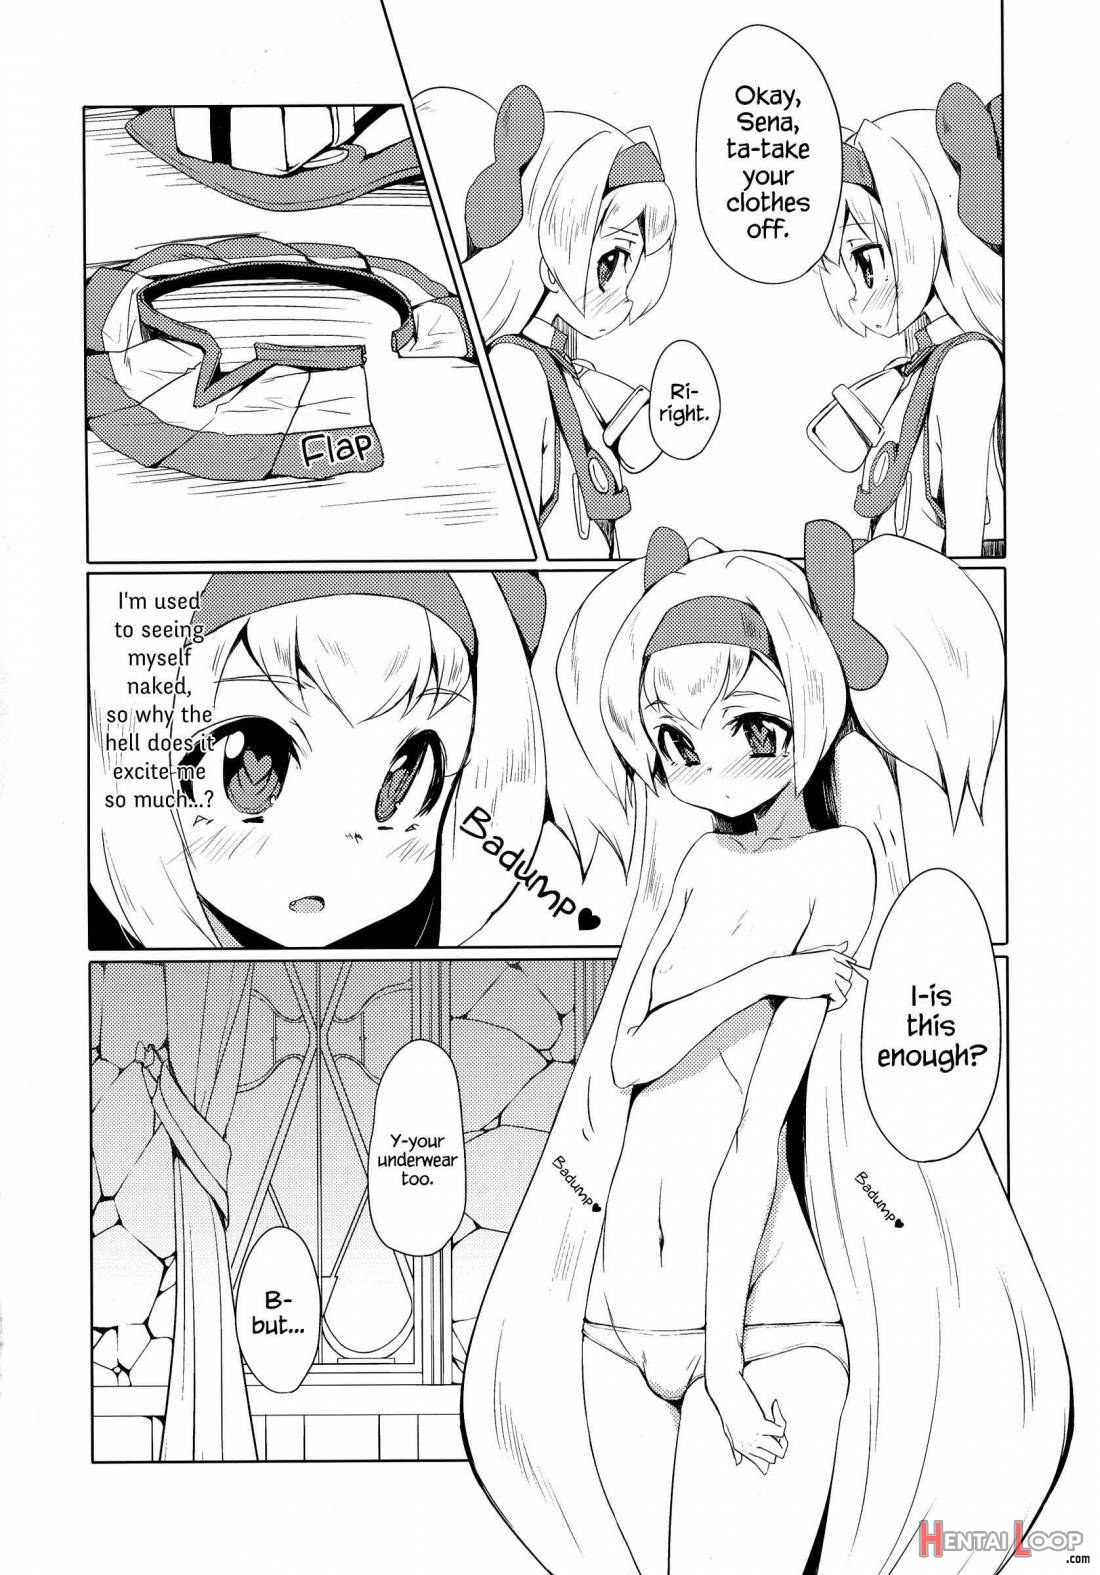 Hime-shiki Shitsuke 2 page 8